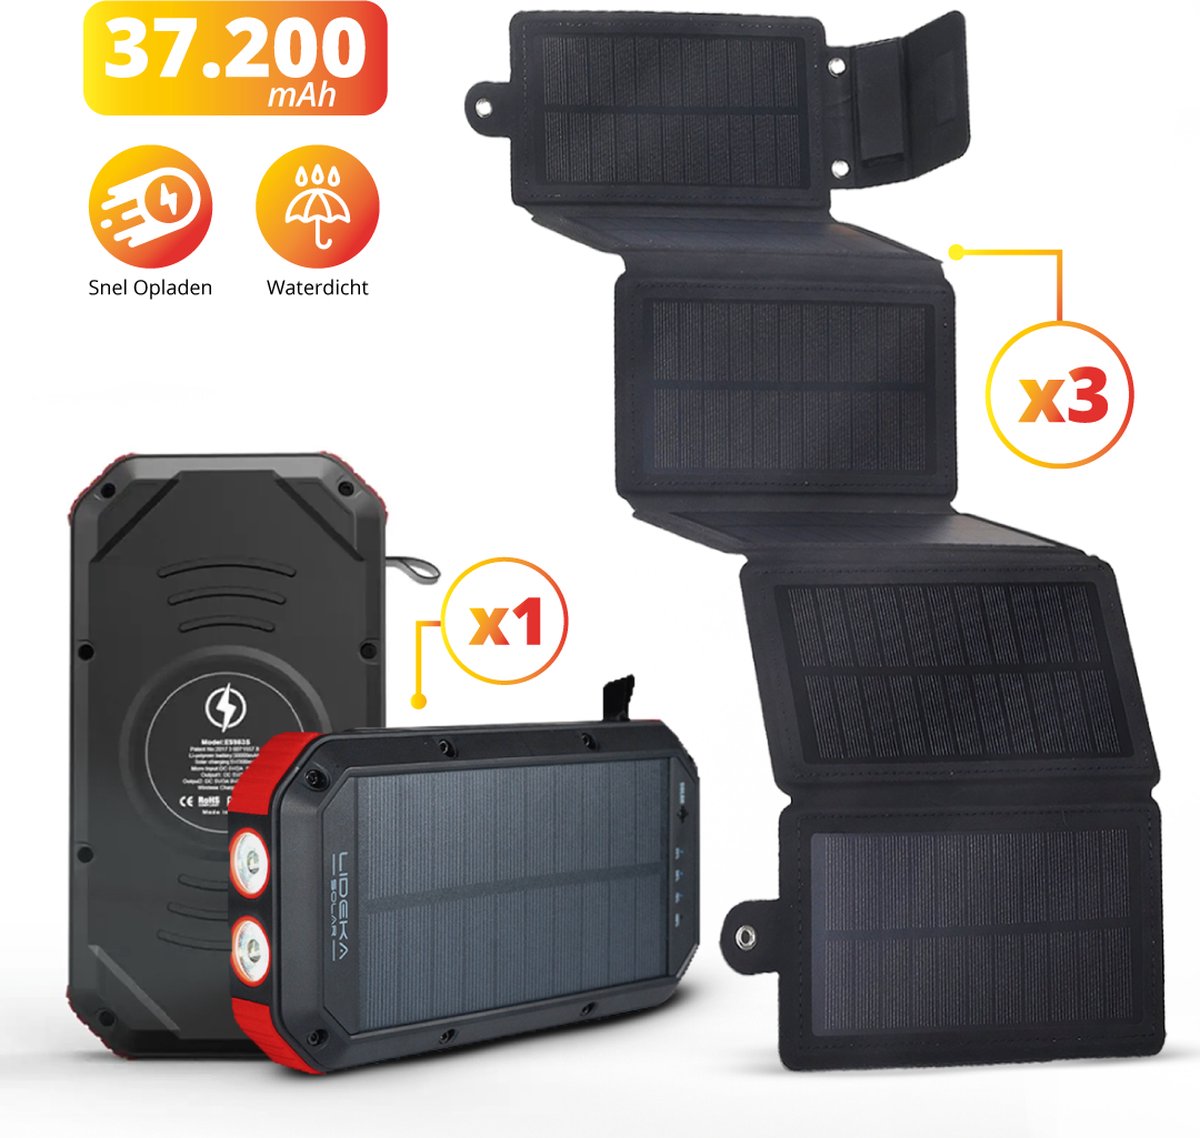 Lideka® - Solar Powerbank + Solar Charger 3x - De Ultieme Combi - 30.000 mAh Powerbank - Zeer Efficiënte Solar Charger Op Zonne-energie - Outdoor - Iphone, Samsung, Apple